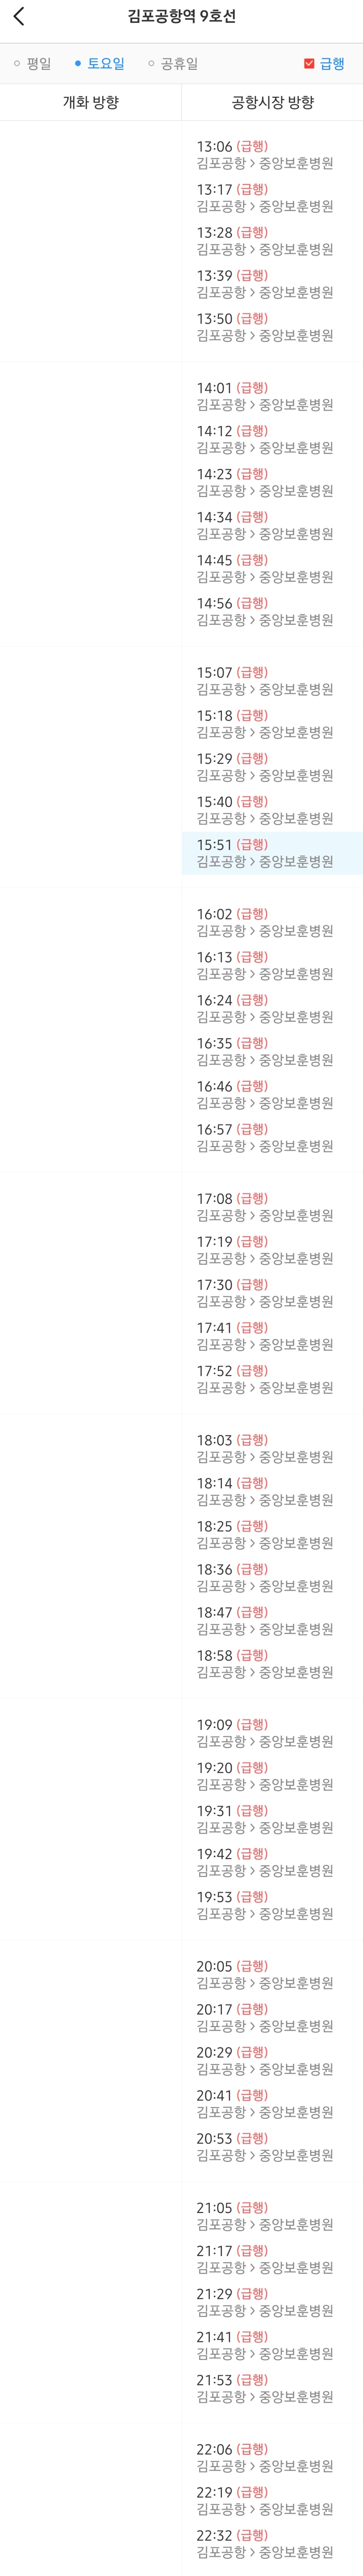 김포공항역 토요일 오후 9호선 급행열차 시간표